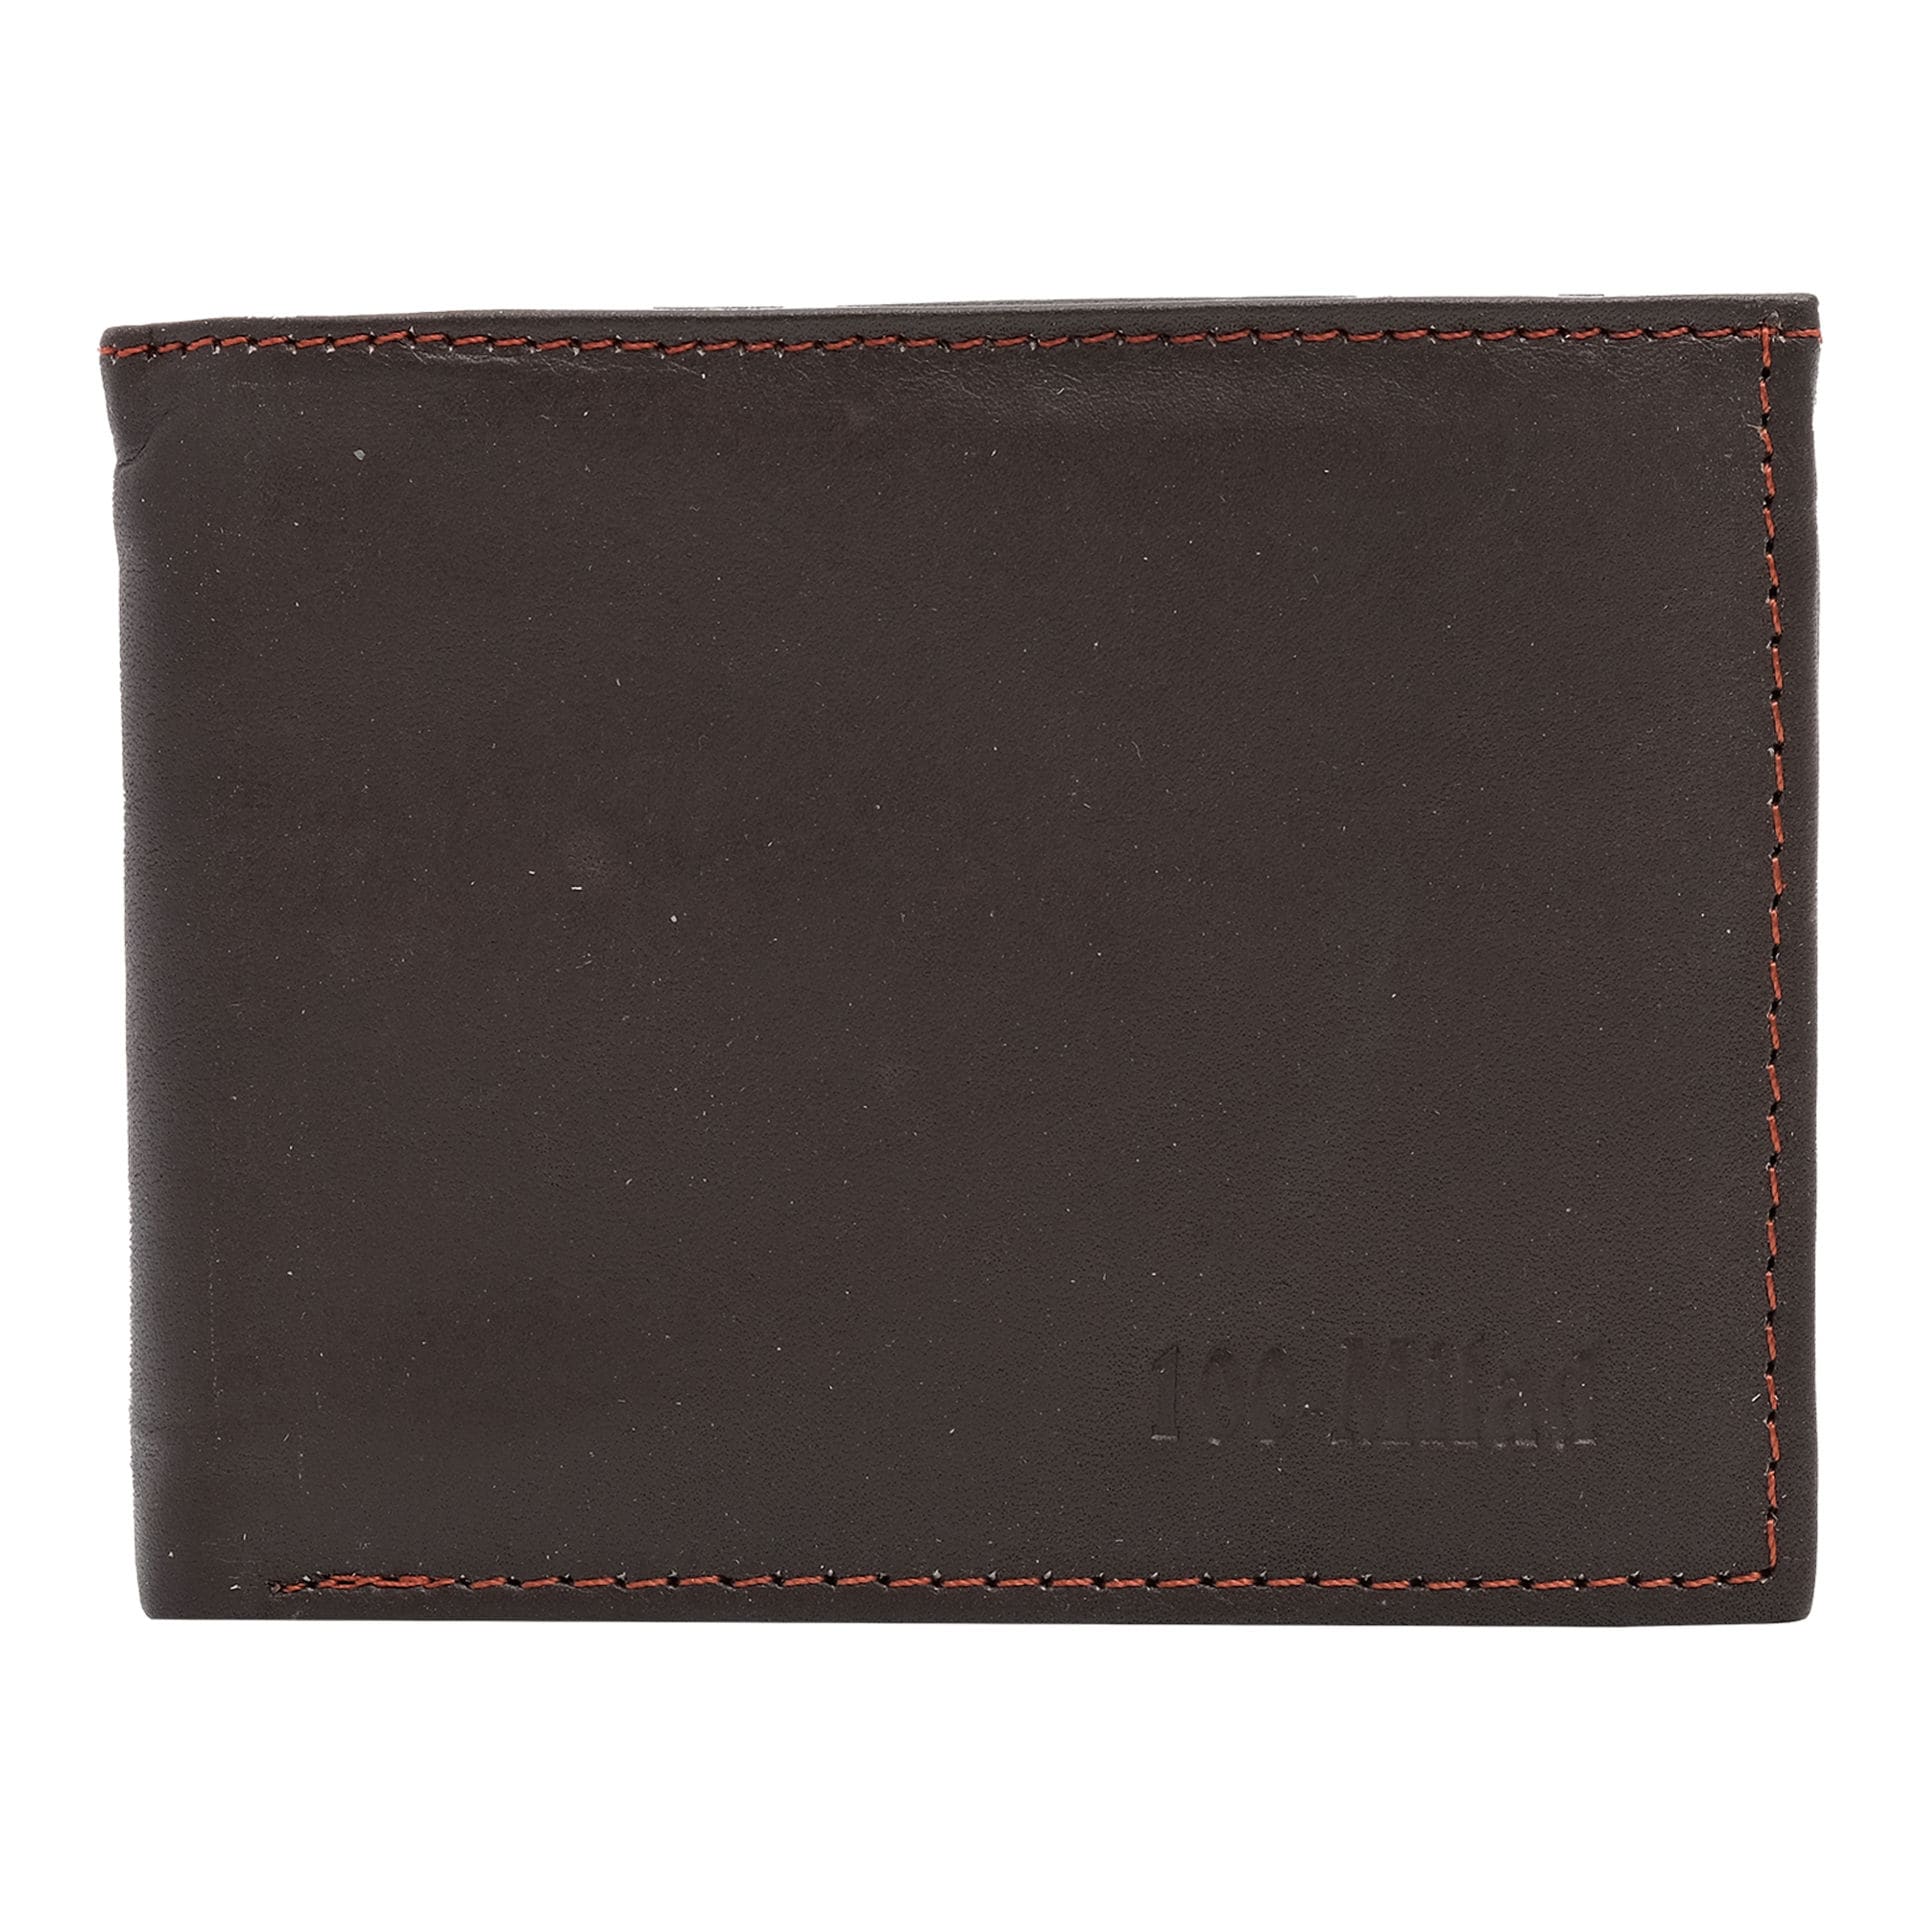 Shop 100-MILAD 100-Milad Leather Plain Design Wallet for Men, Coffee ...